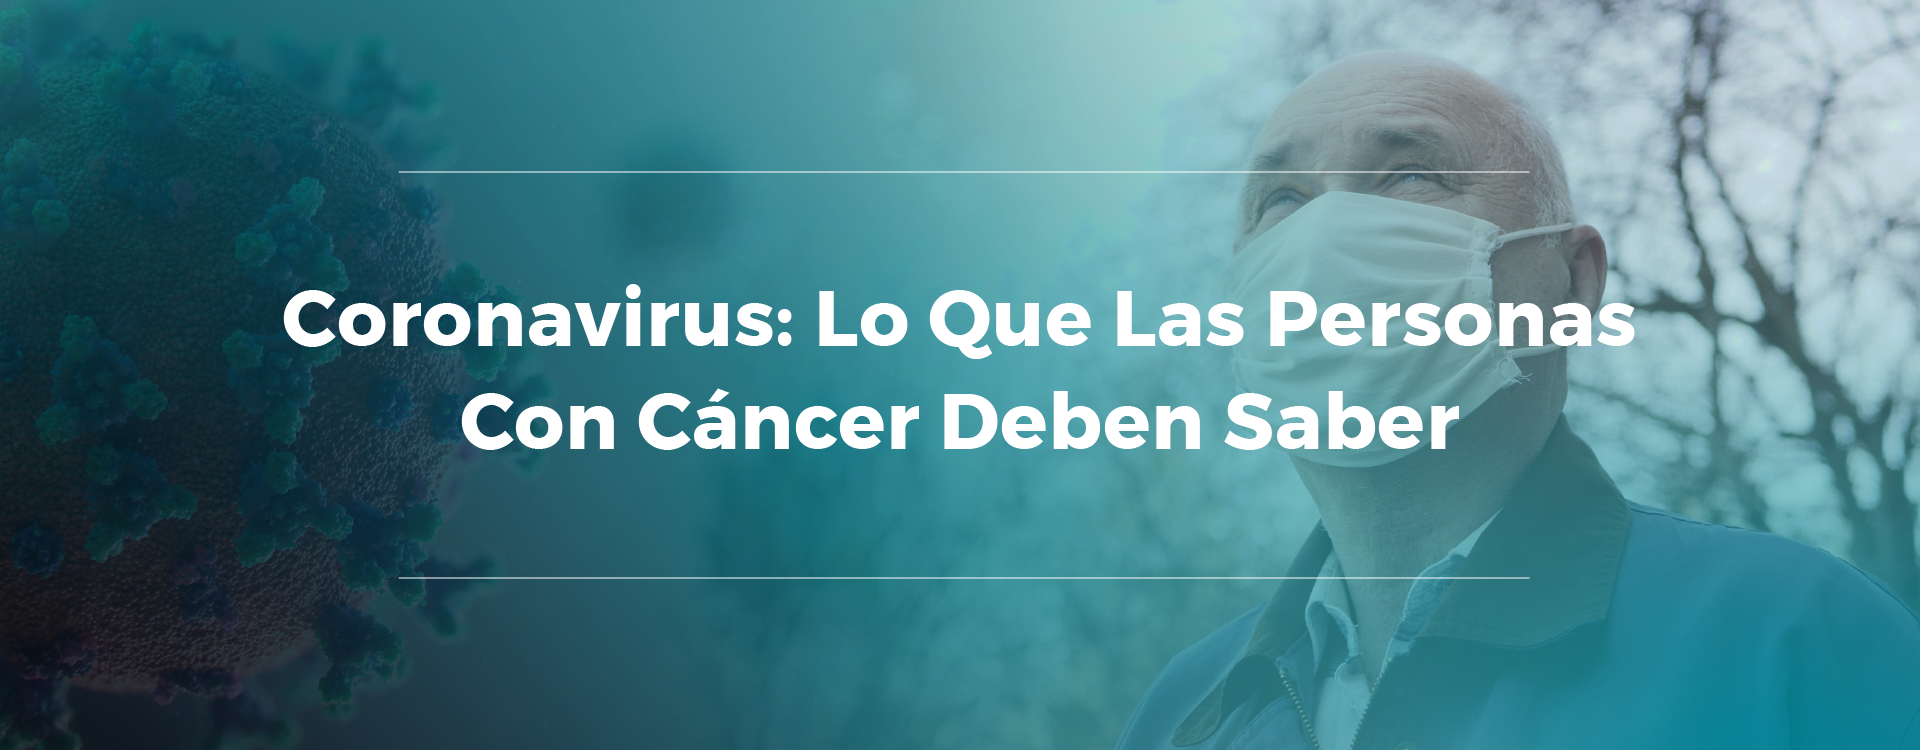 Coronavirus: lo que las personas con cáncer deben saber